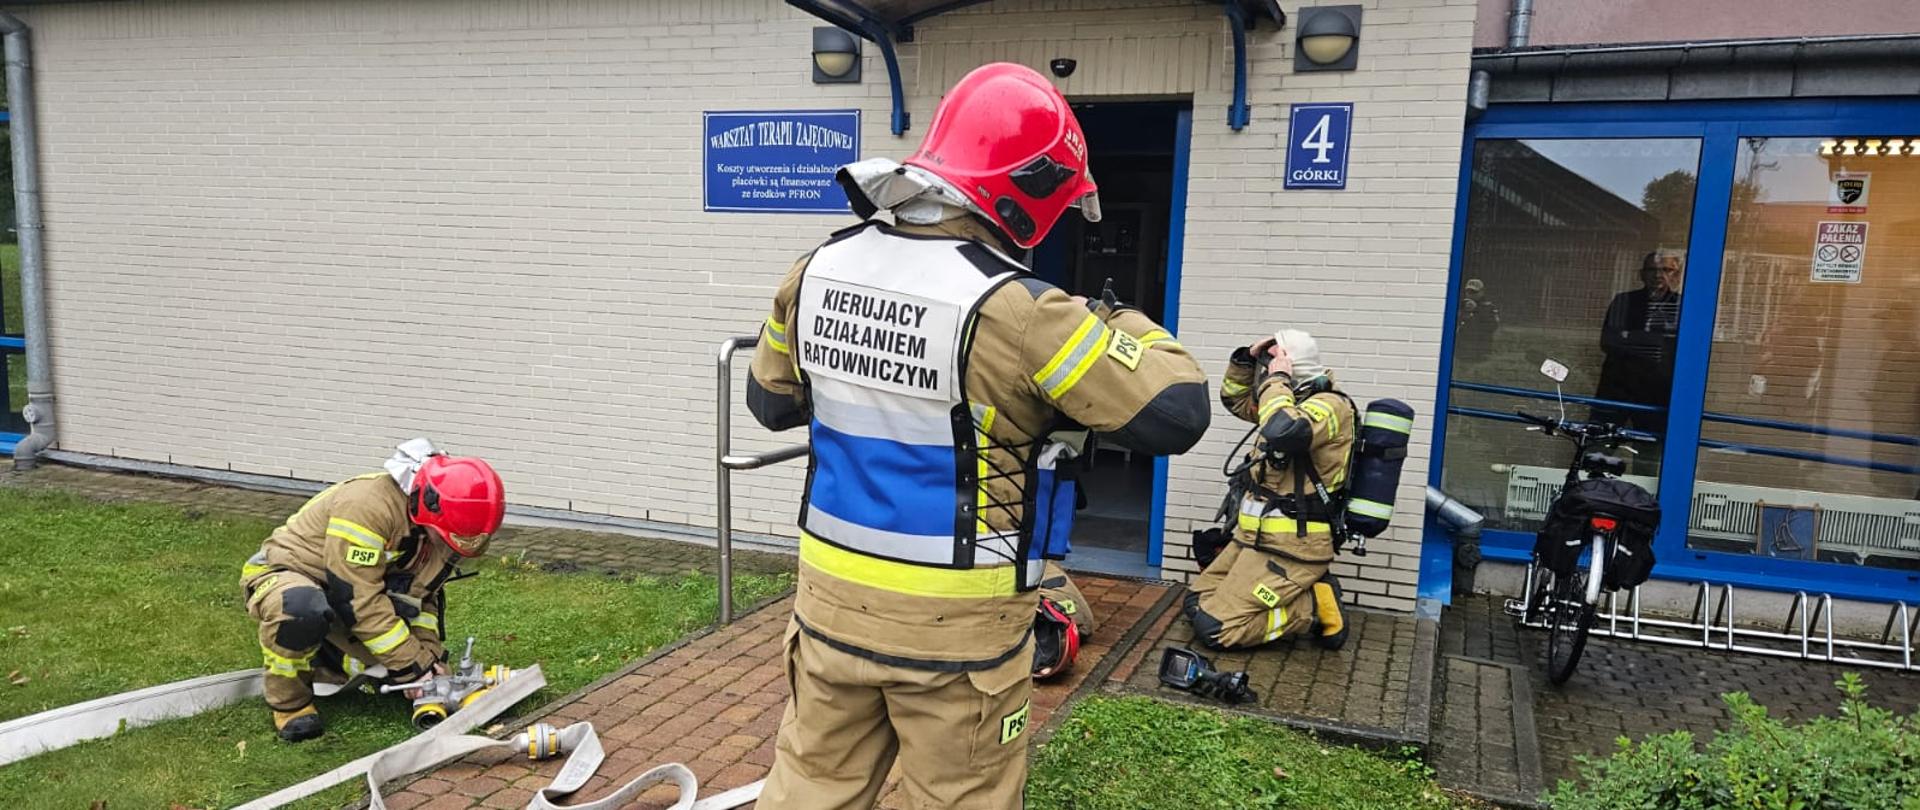 Strażacy ubierają sprzęt ochrony układu oddechowego przed wejściem do budynku.